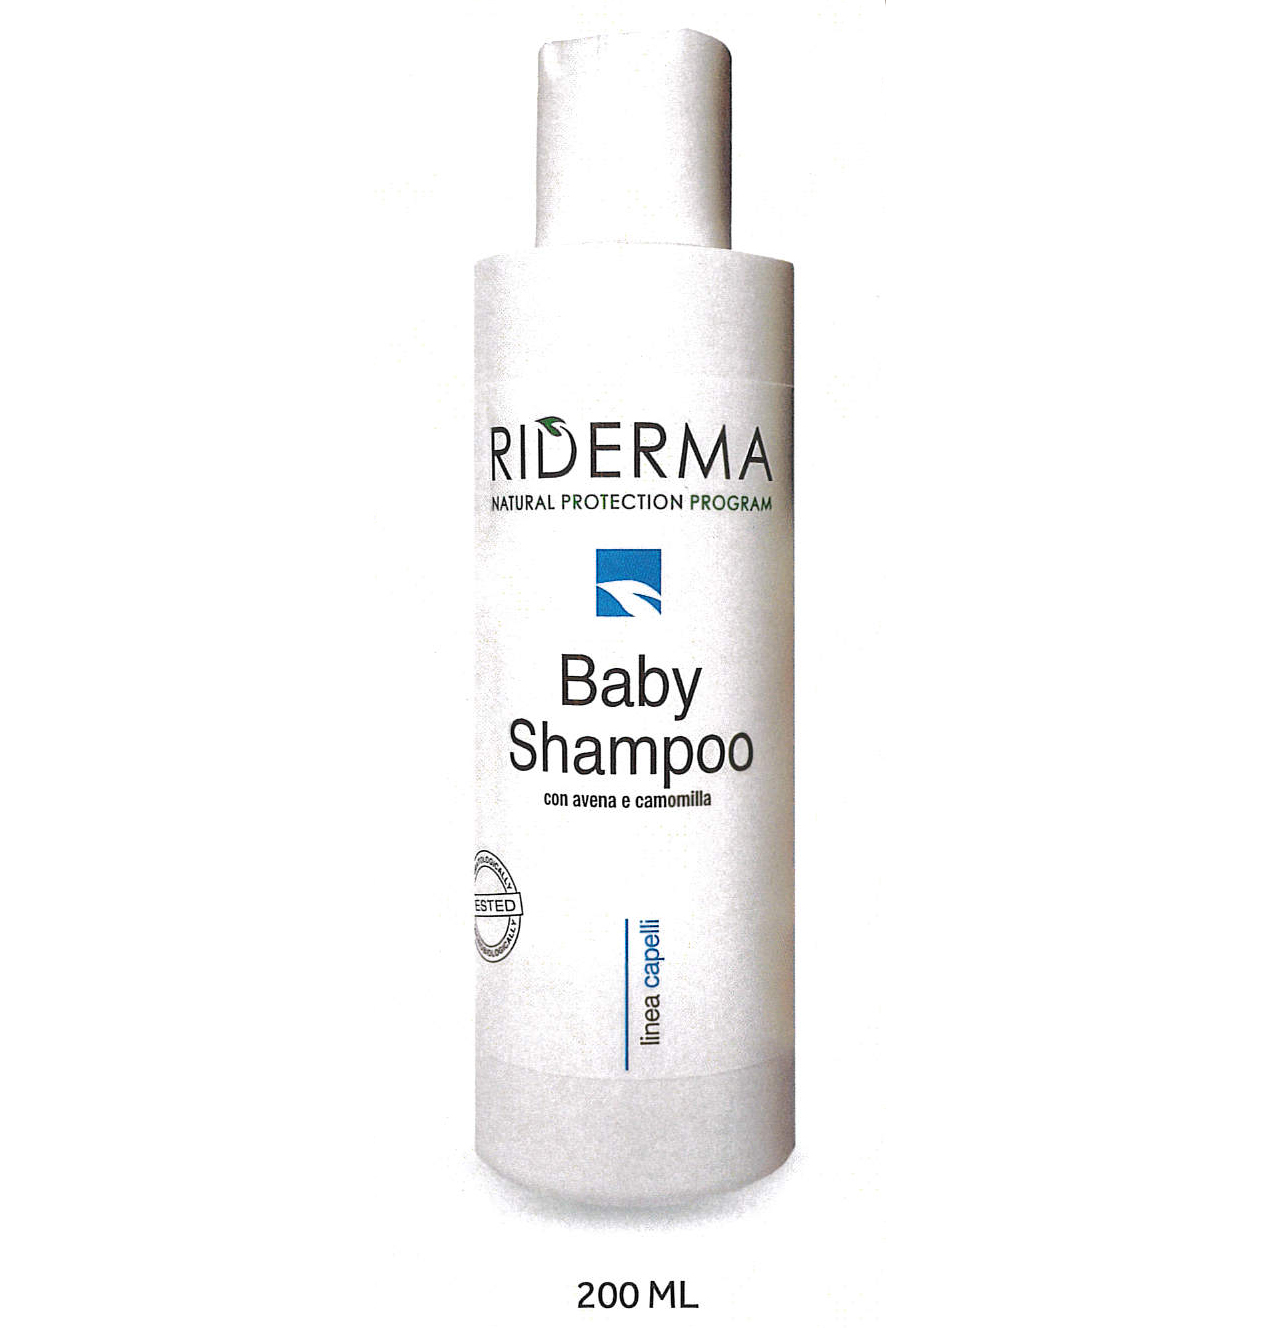 Riderma Baby Shampoo